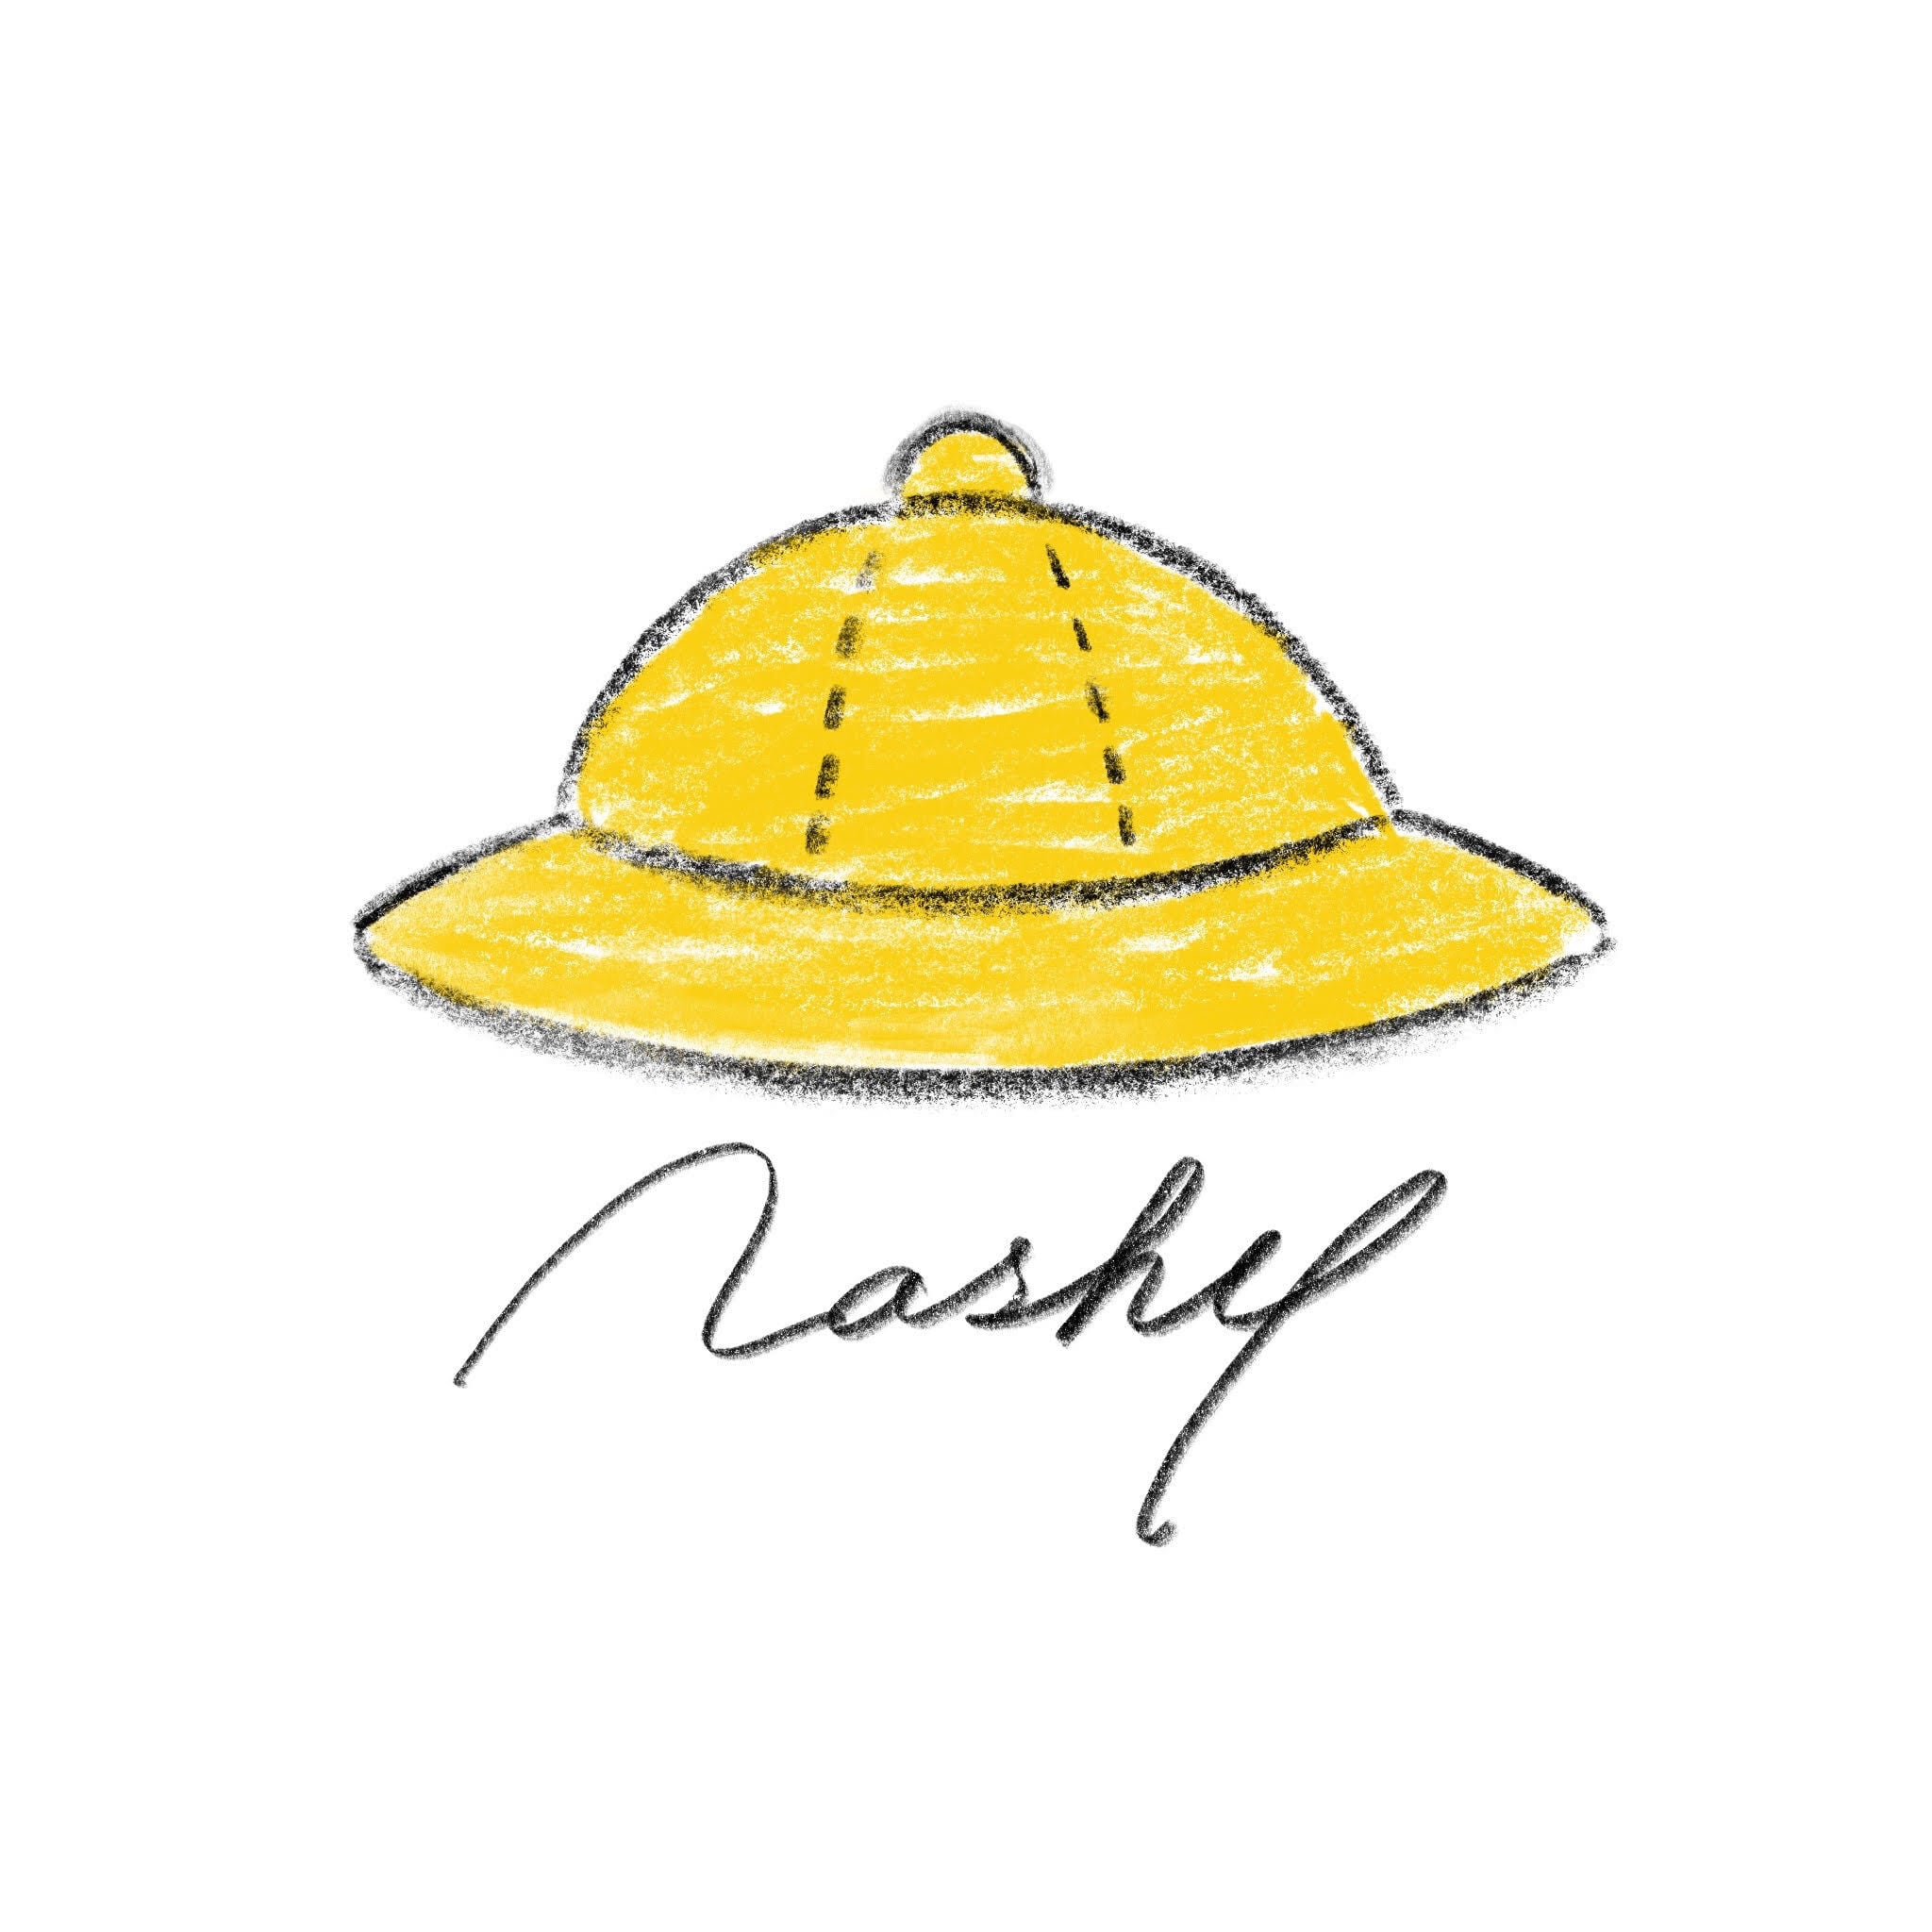 Nashy